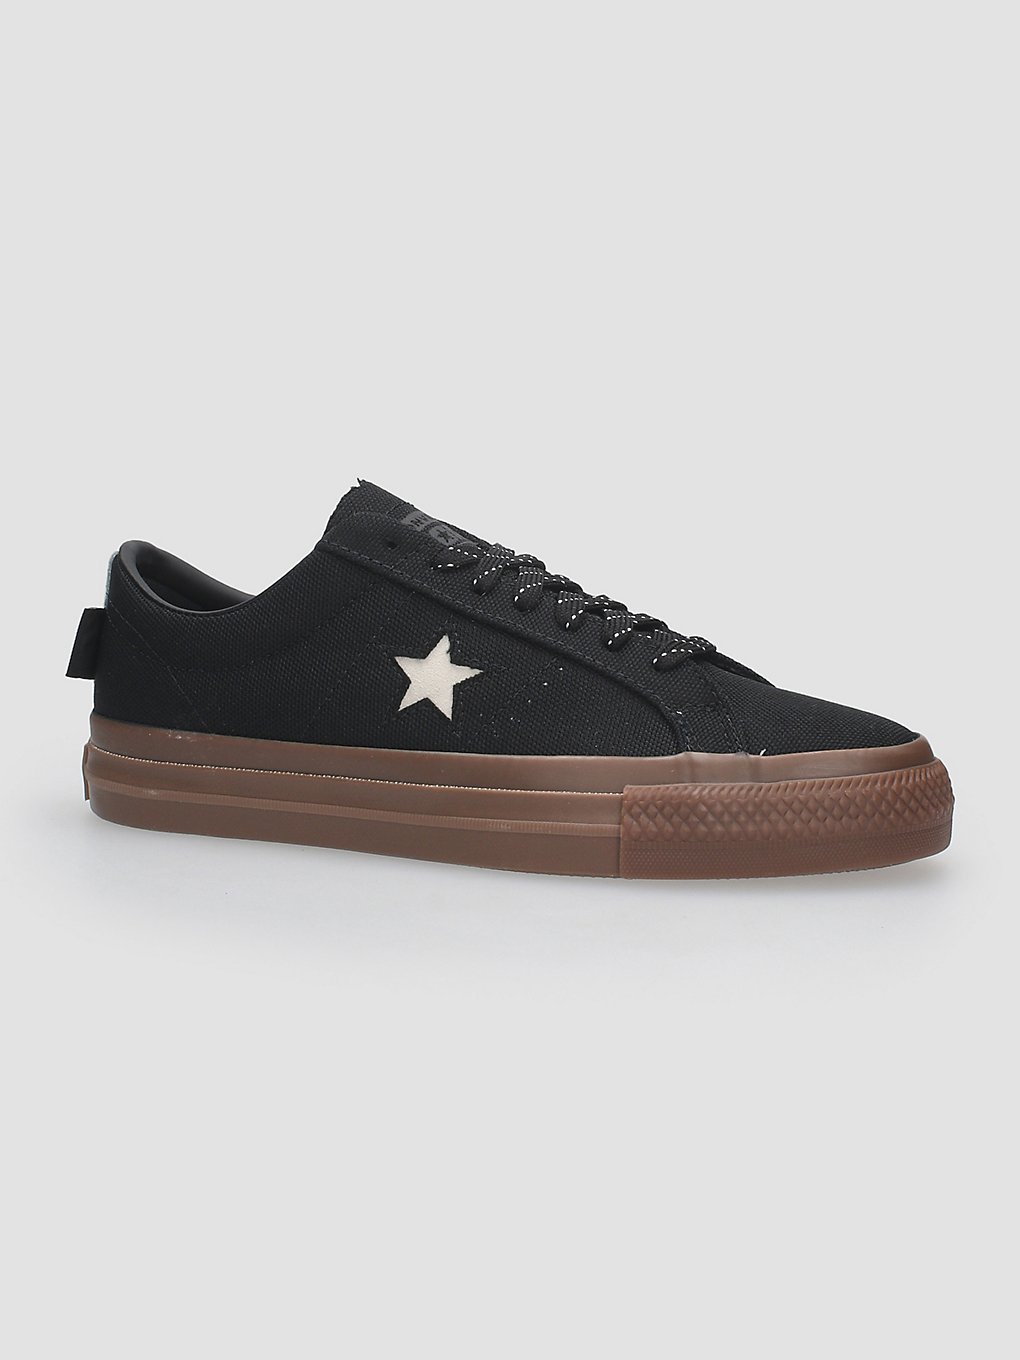 Converse One Star Pro Cordura Canvas Skate Shoes dark gum kaufen